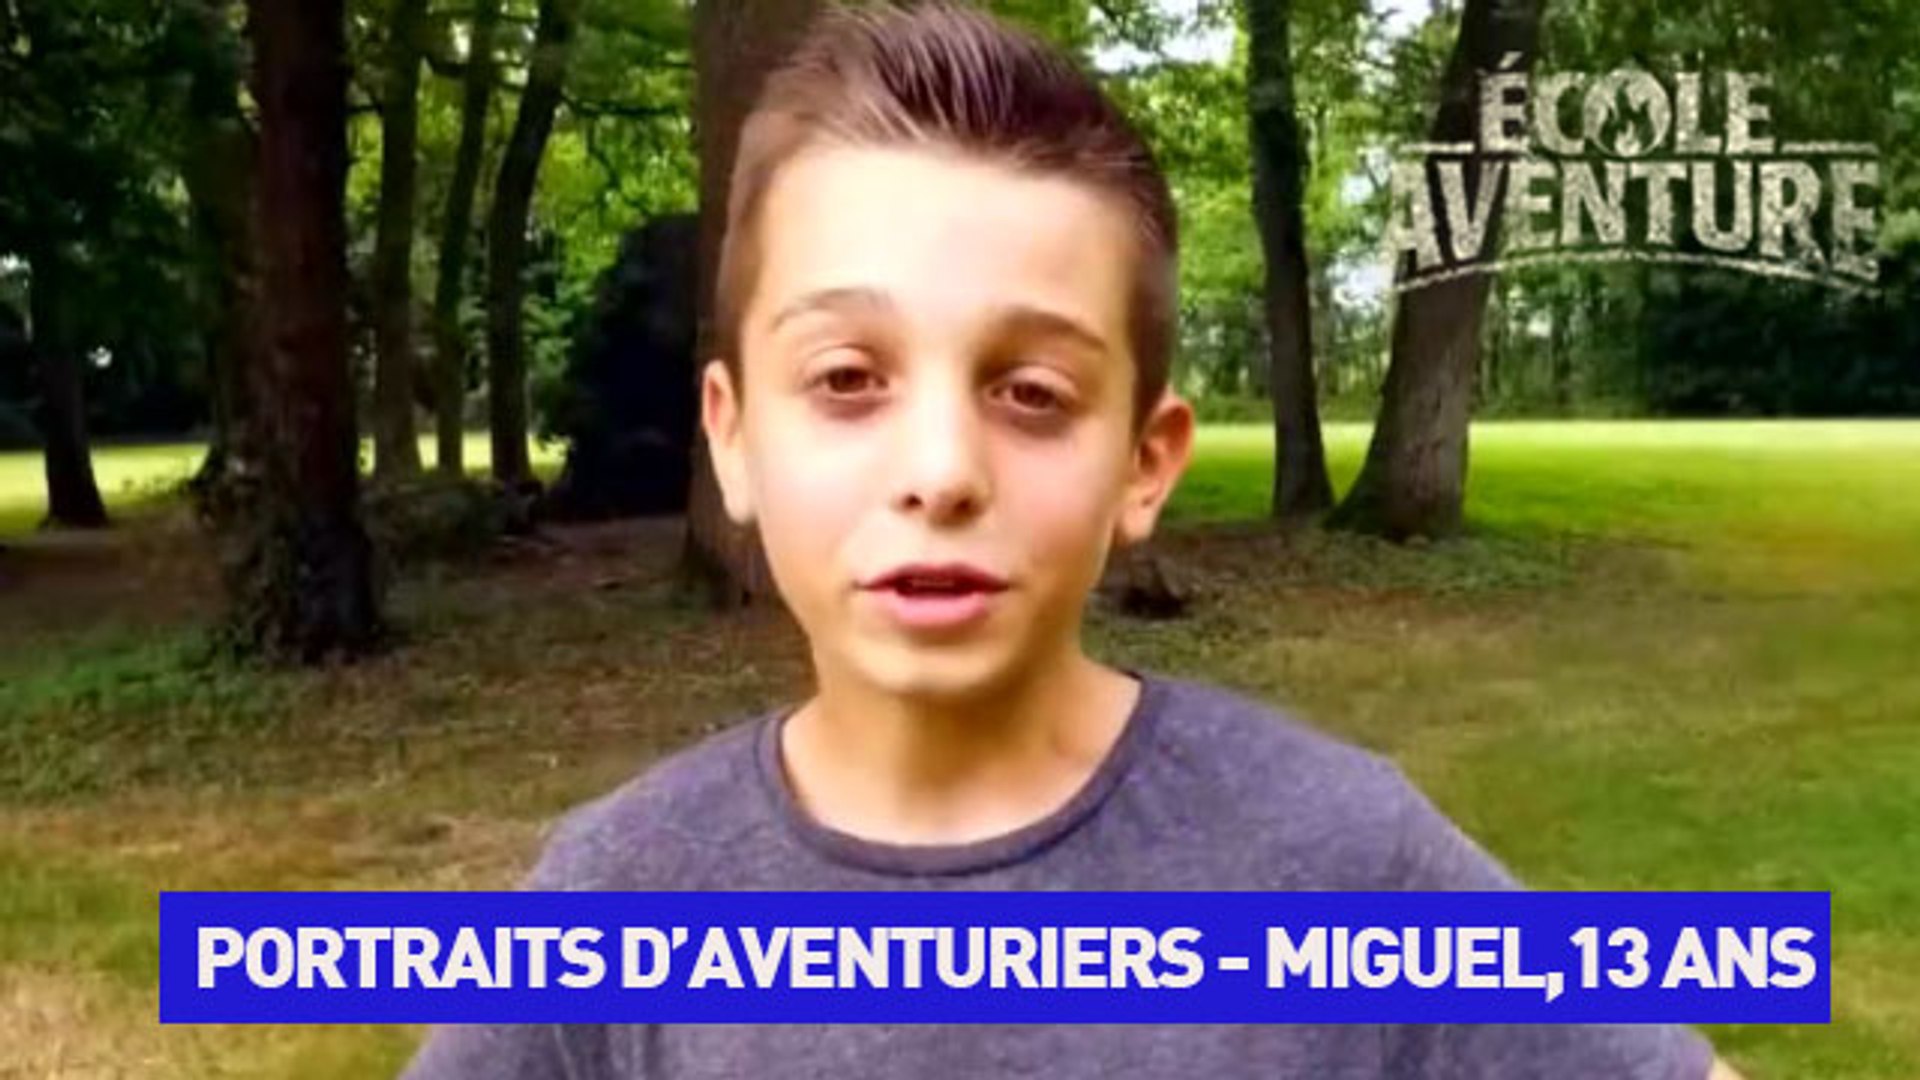 Miguel - 13 ans: "Ma passion, c'est le rugby!" (ECOLE AVENTURE - nouveau  sur TéléTOON+) - Vidéo Dailymotion